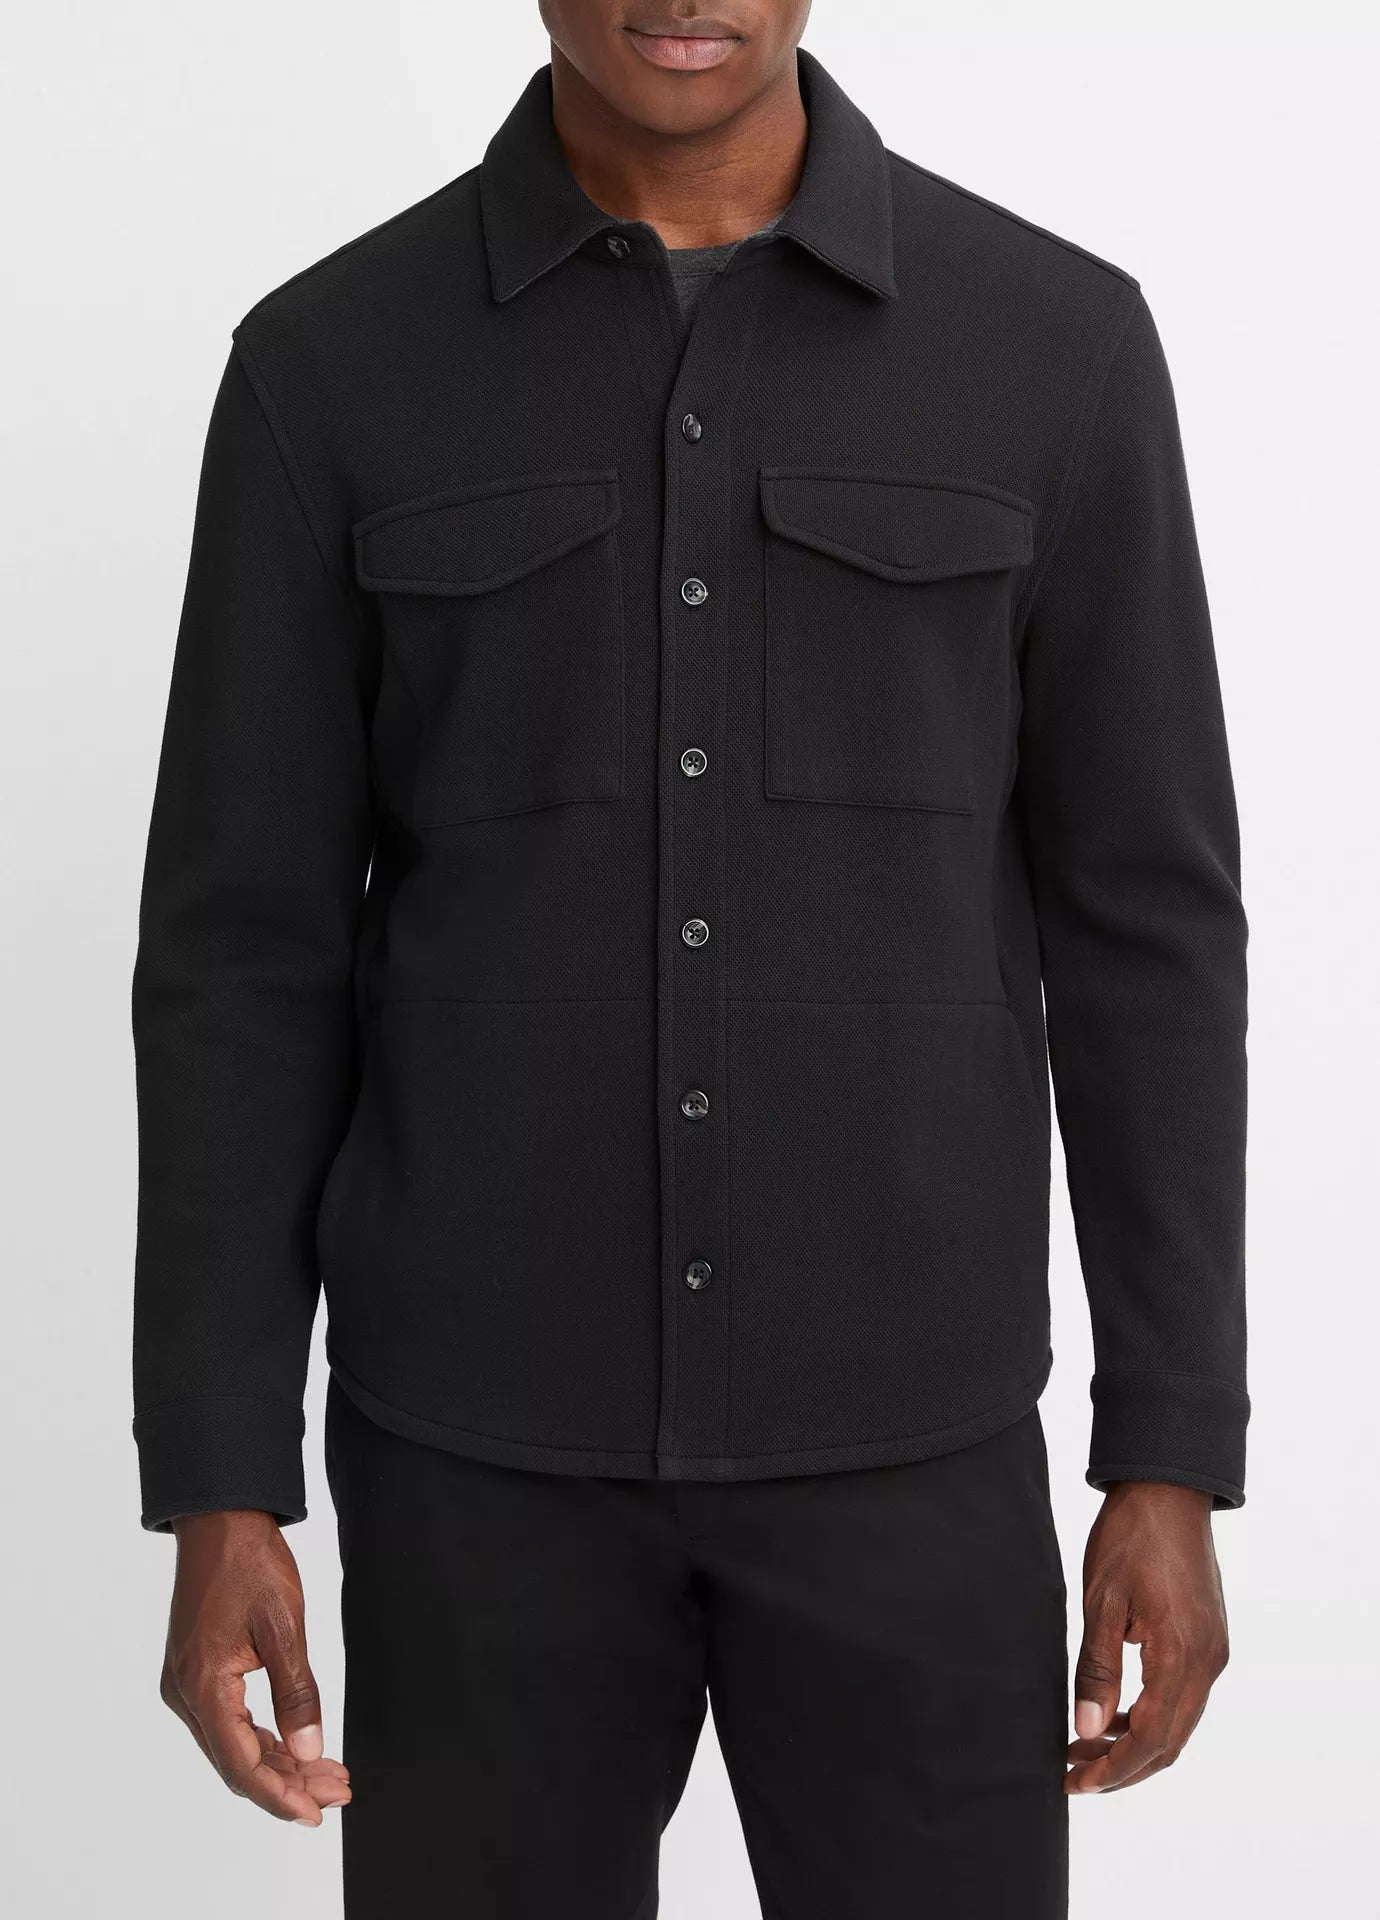 Vince Shirt Jacket Black/Med Grey